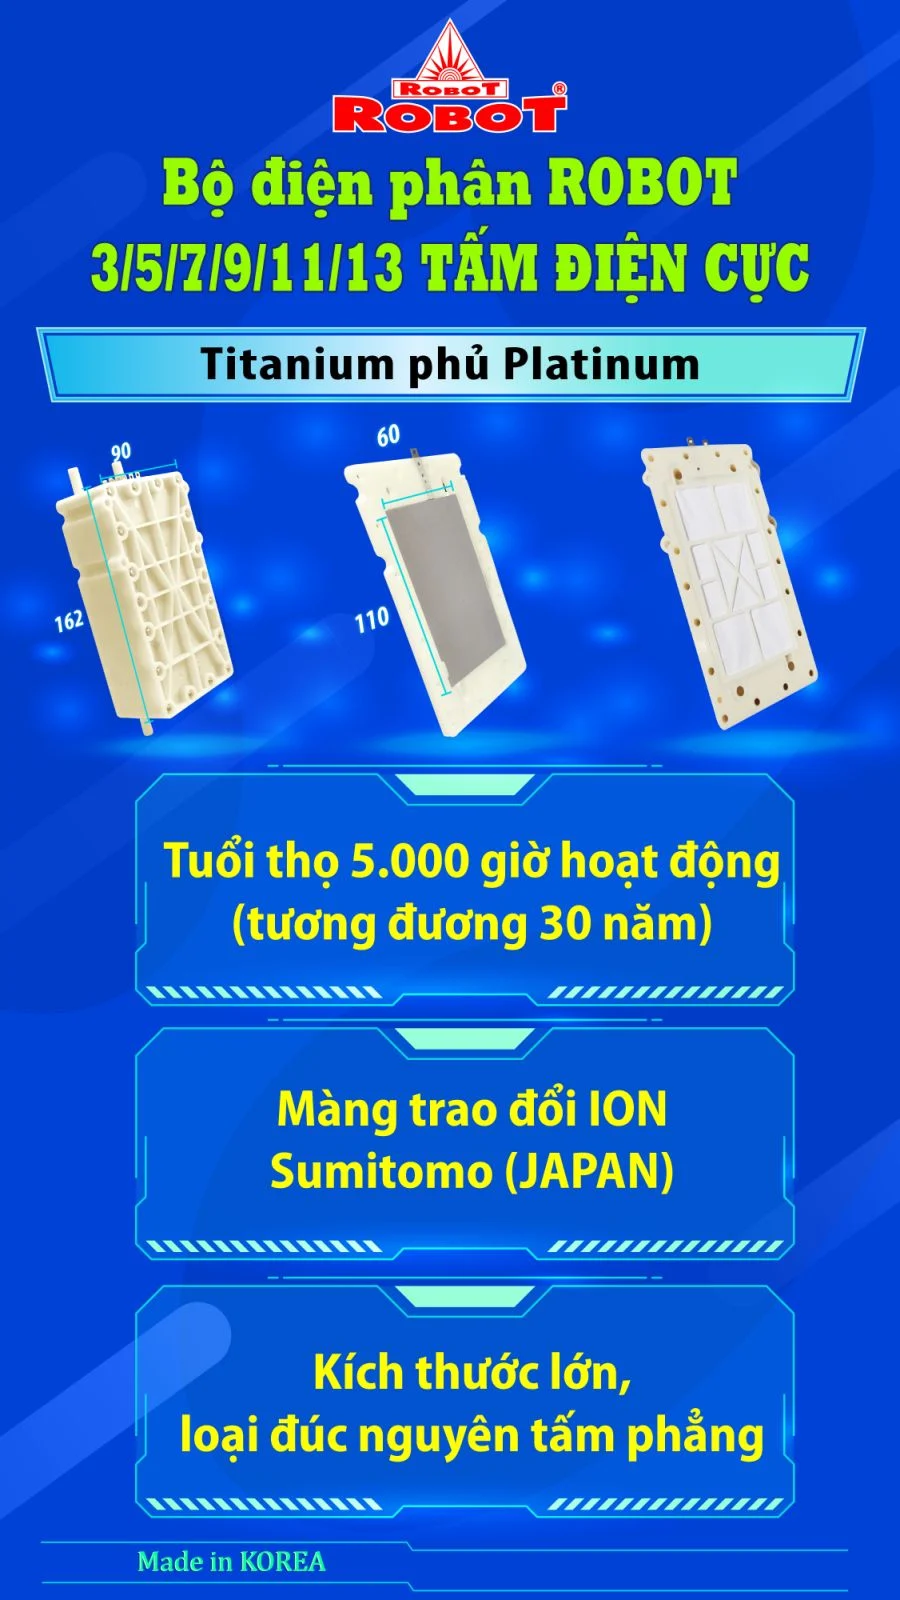 Bộ điện phân đến 3 tấm điện cực Titanium phủ Platinum của IONQUEEN 912